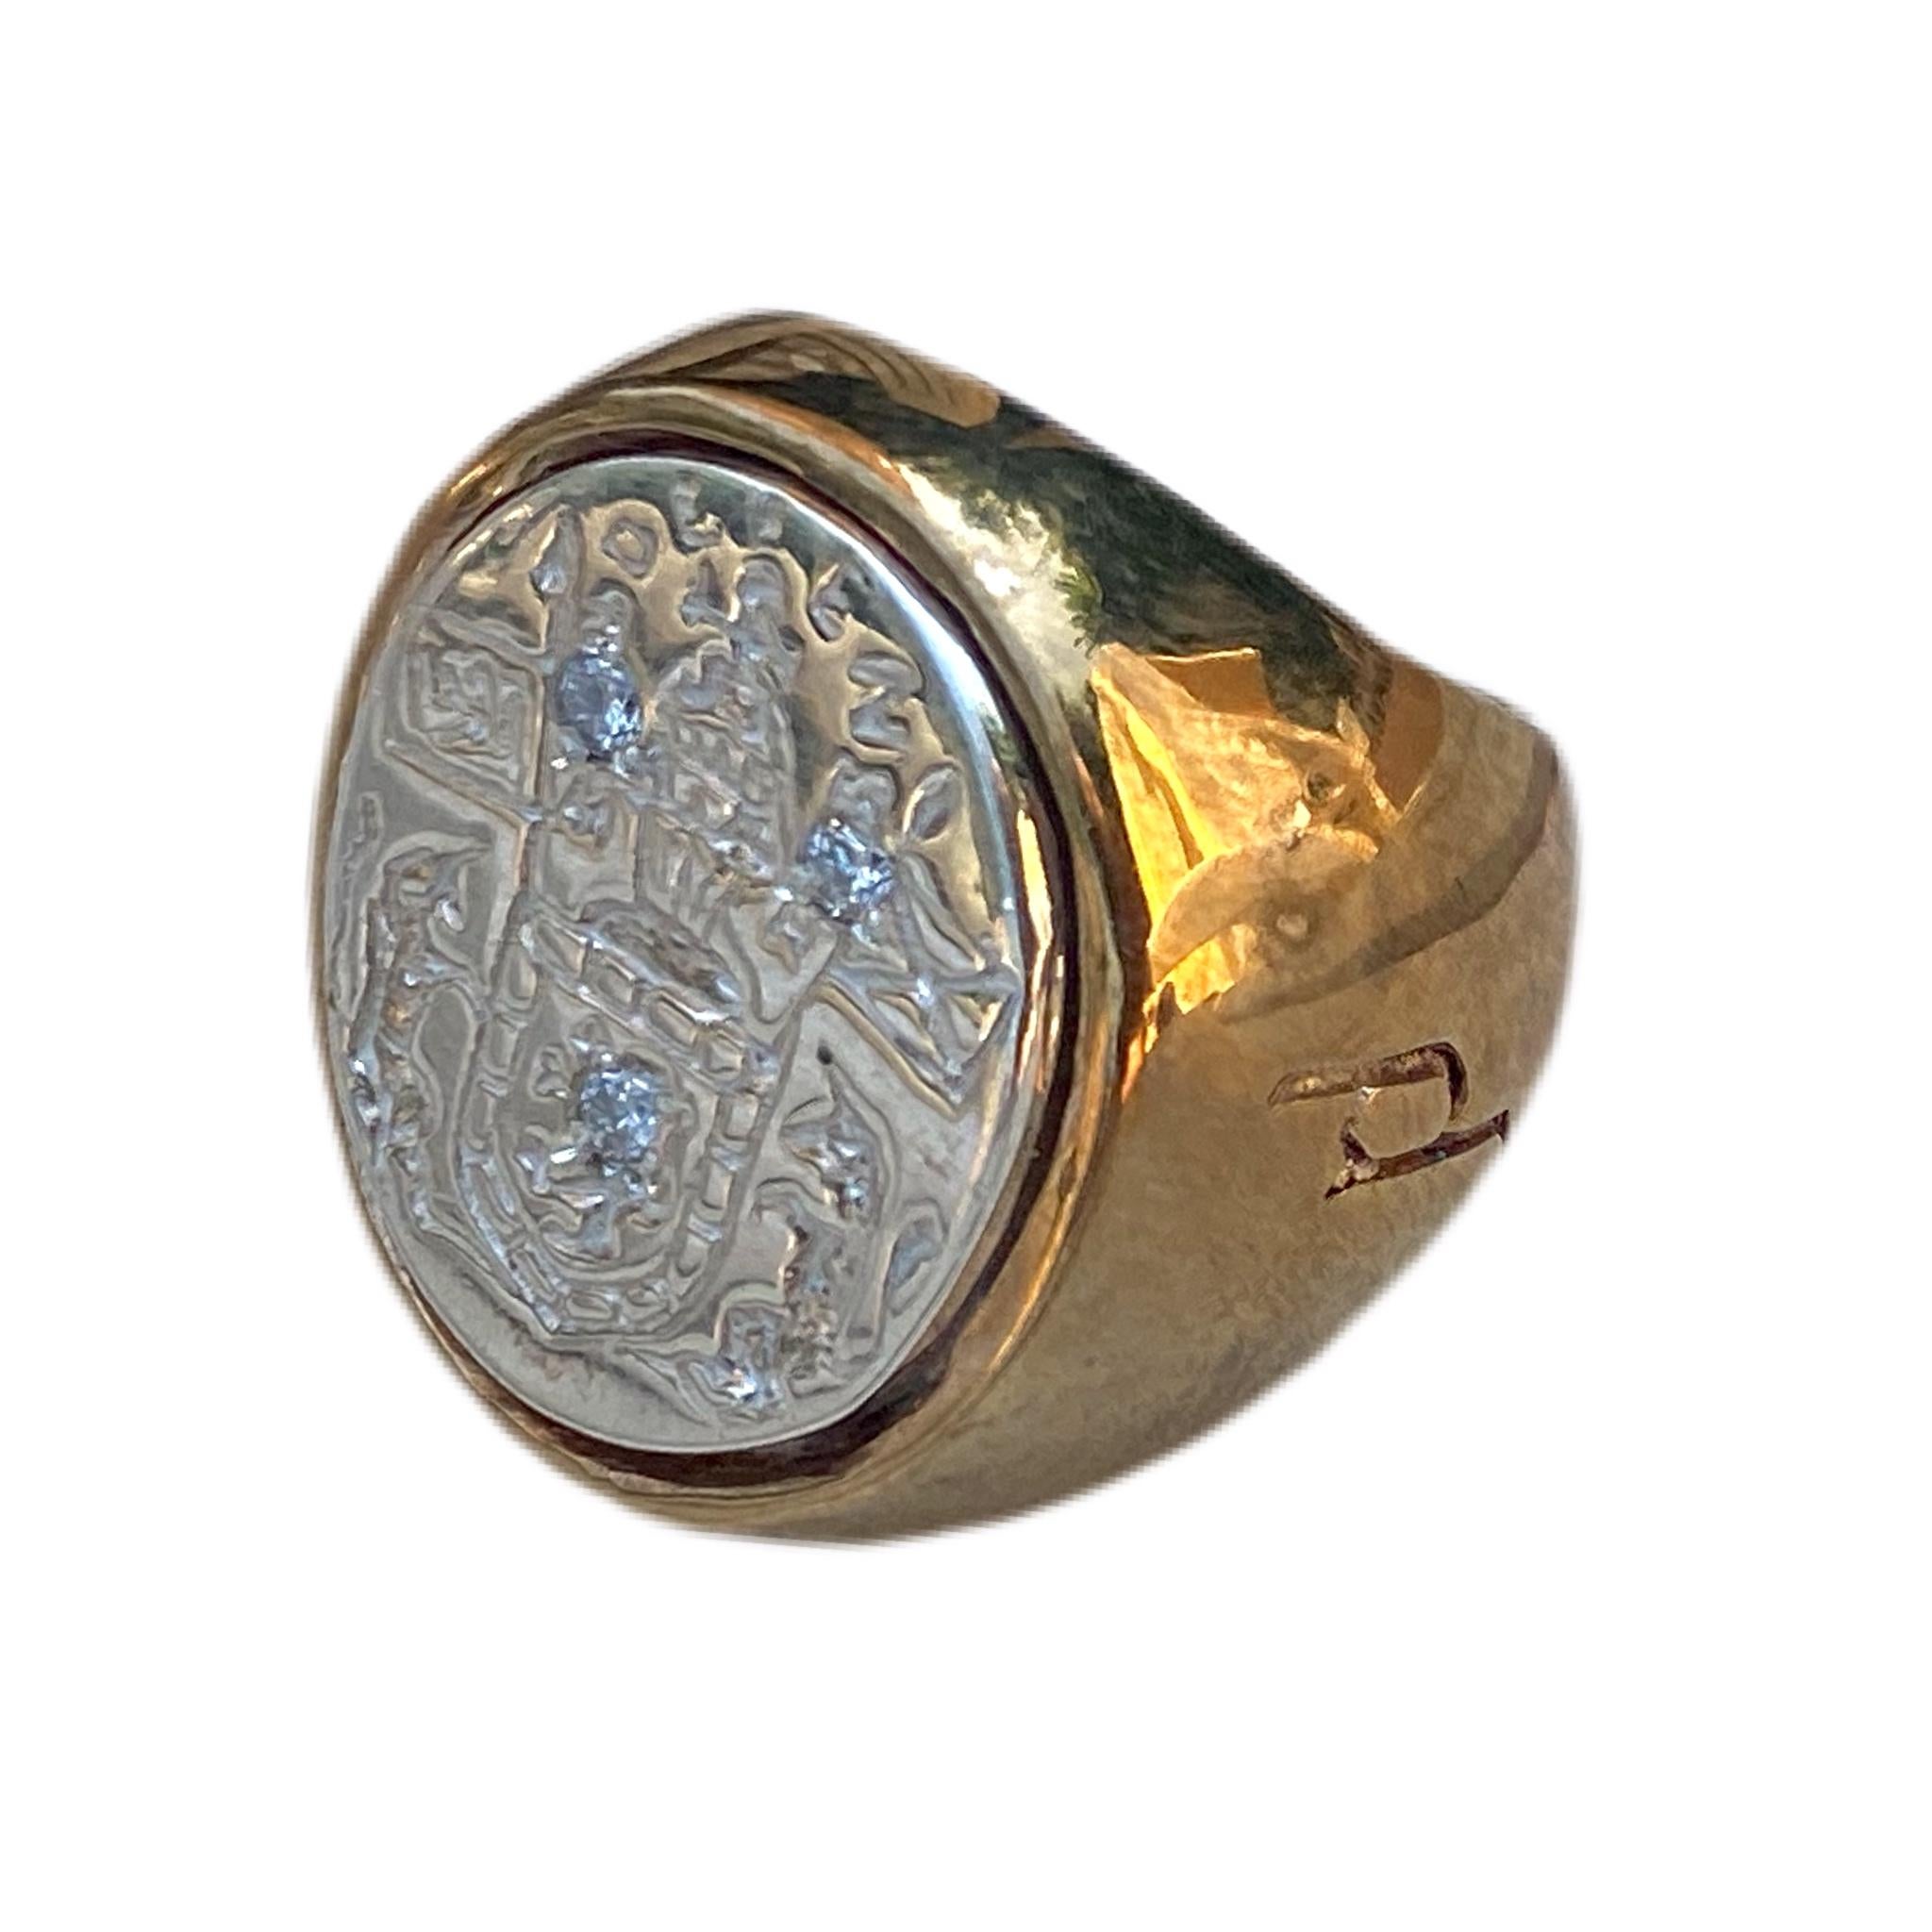 3 pcs Sapphire Crest Signet Ring Sterling Silver Bronze J Dauphin peut être porté par les femmes ou les hommes.

Inspiré de la bague de la reine Marie d'Écosse. Bague sigillaire en or ; gravée ; épaules ornées de fleurs et de feuilles. Lunette ovale